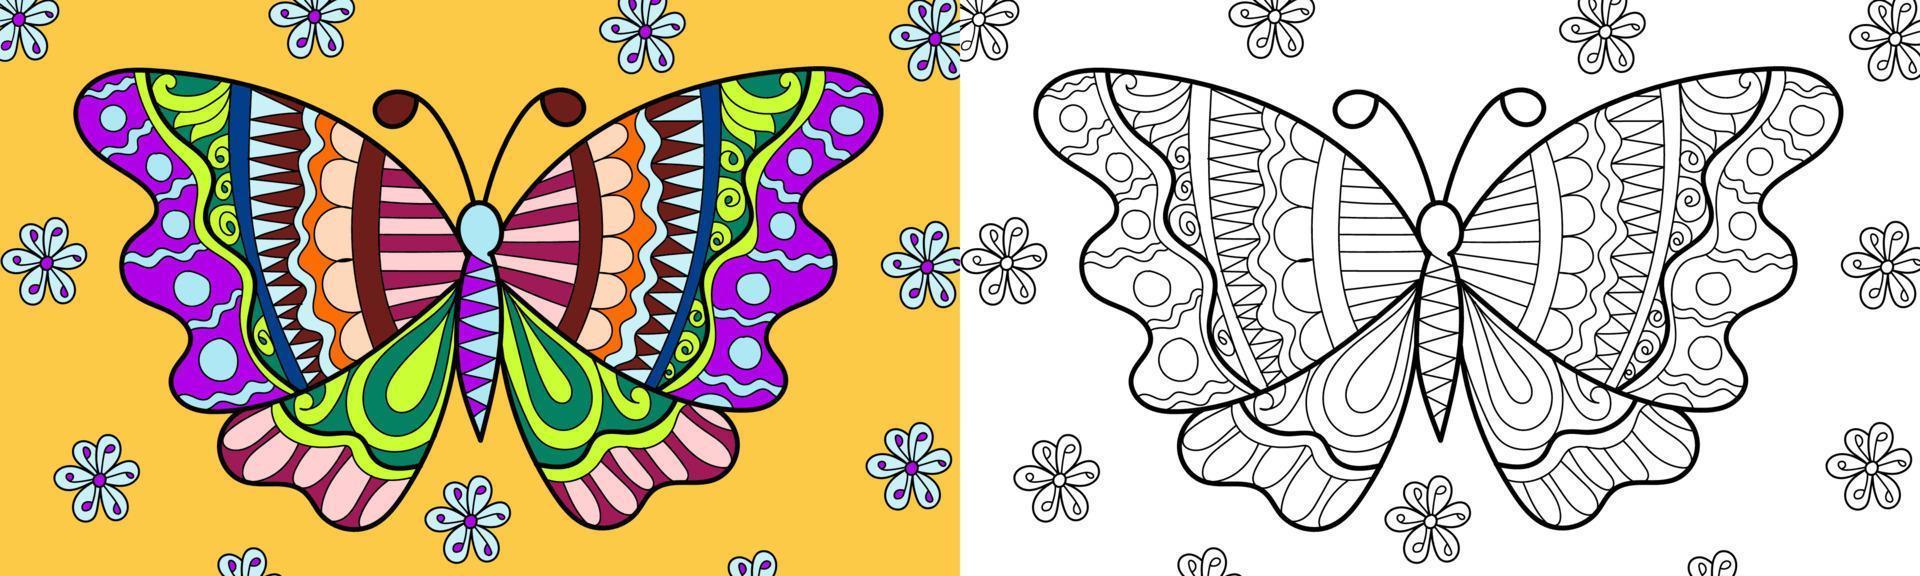 decoratieve vlinder henna stijl kleurboek vectorillustratie vector